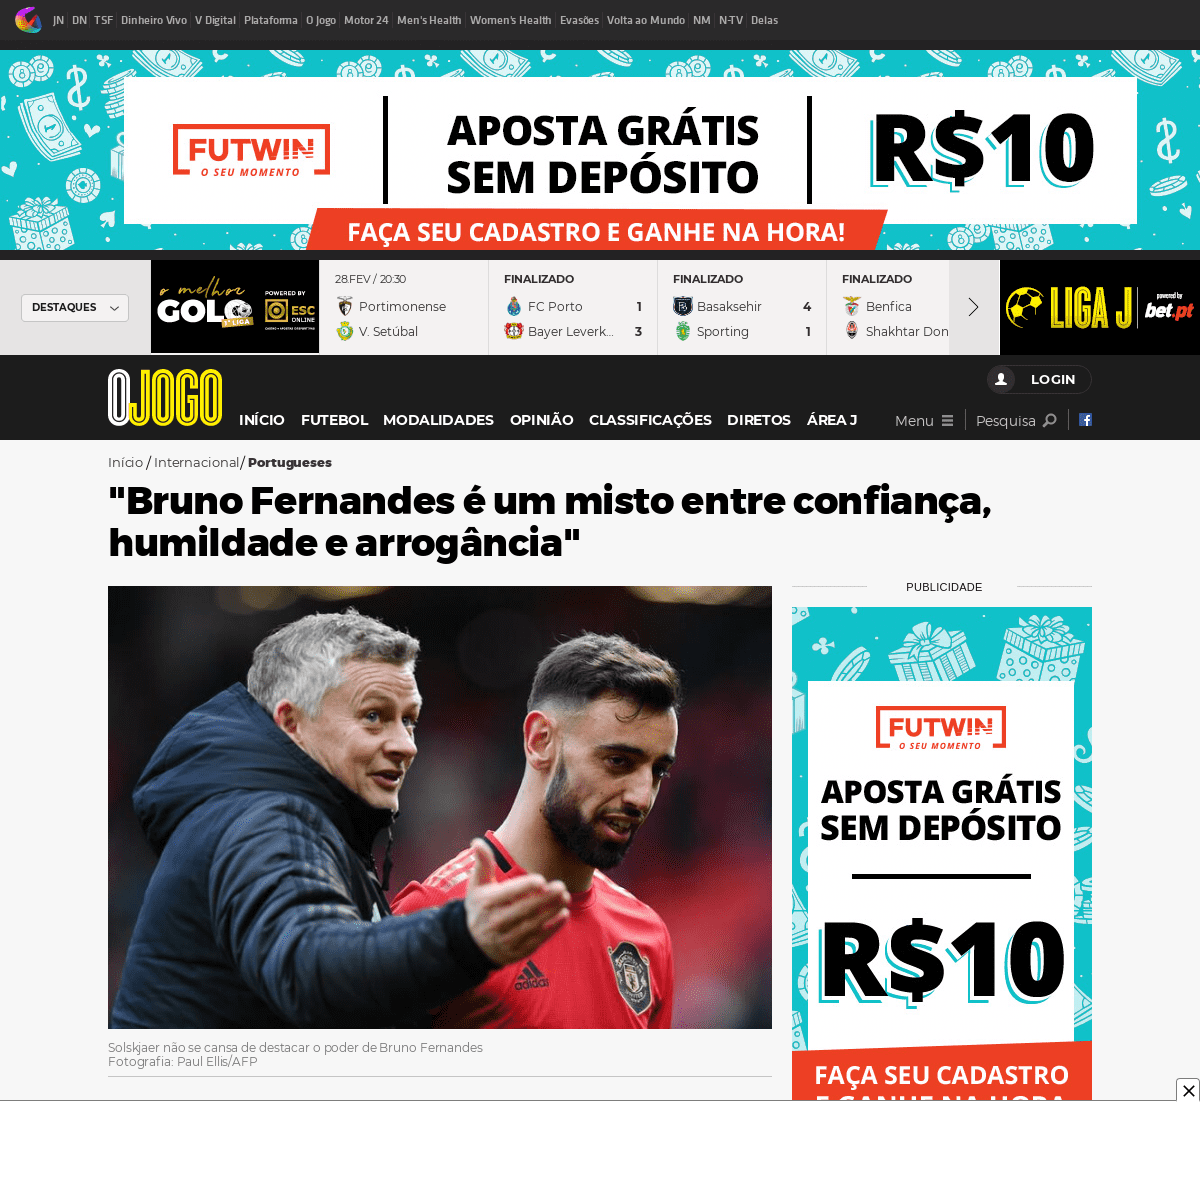 A complete backup of www.ojogo.pt/internacional/portugueses/noticias/bruno-fernandes-e-um-misto-entre-confianca-humildade-e-arro